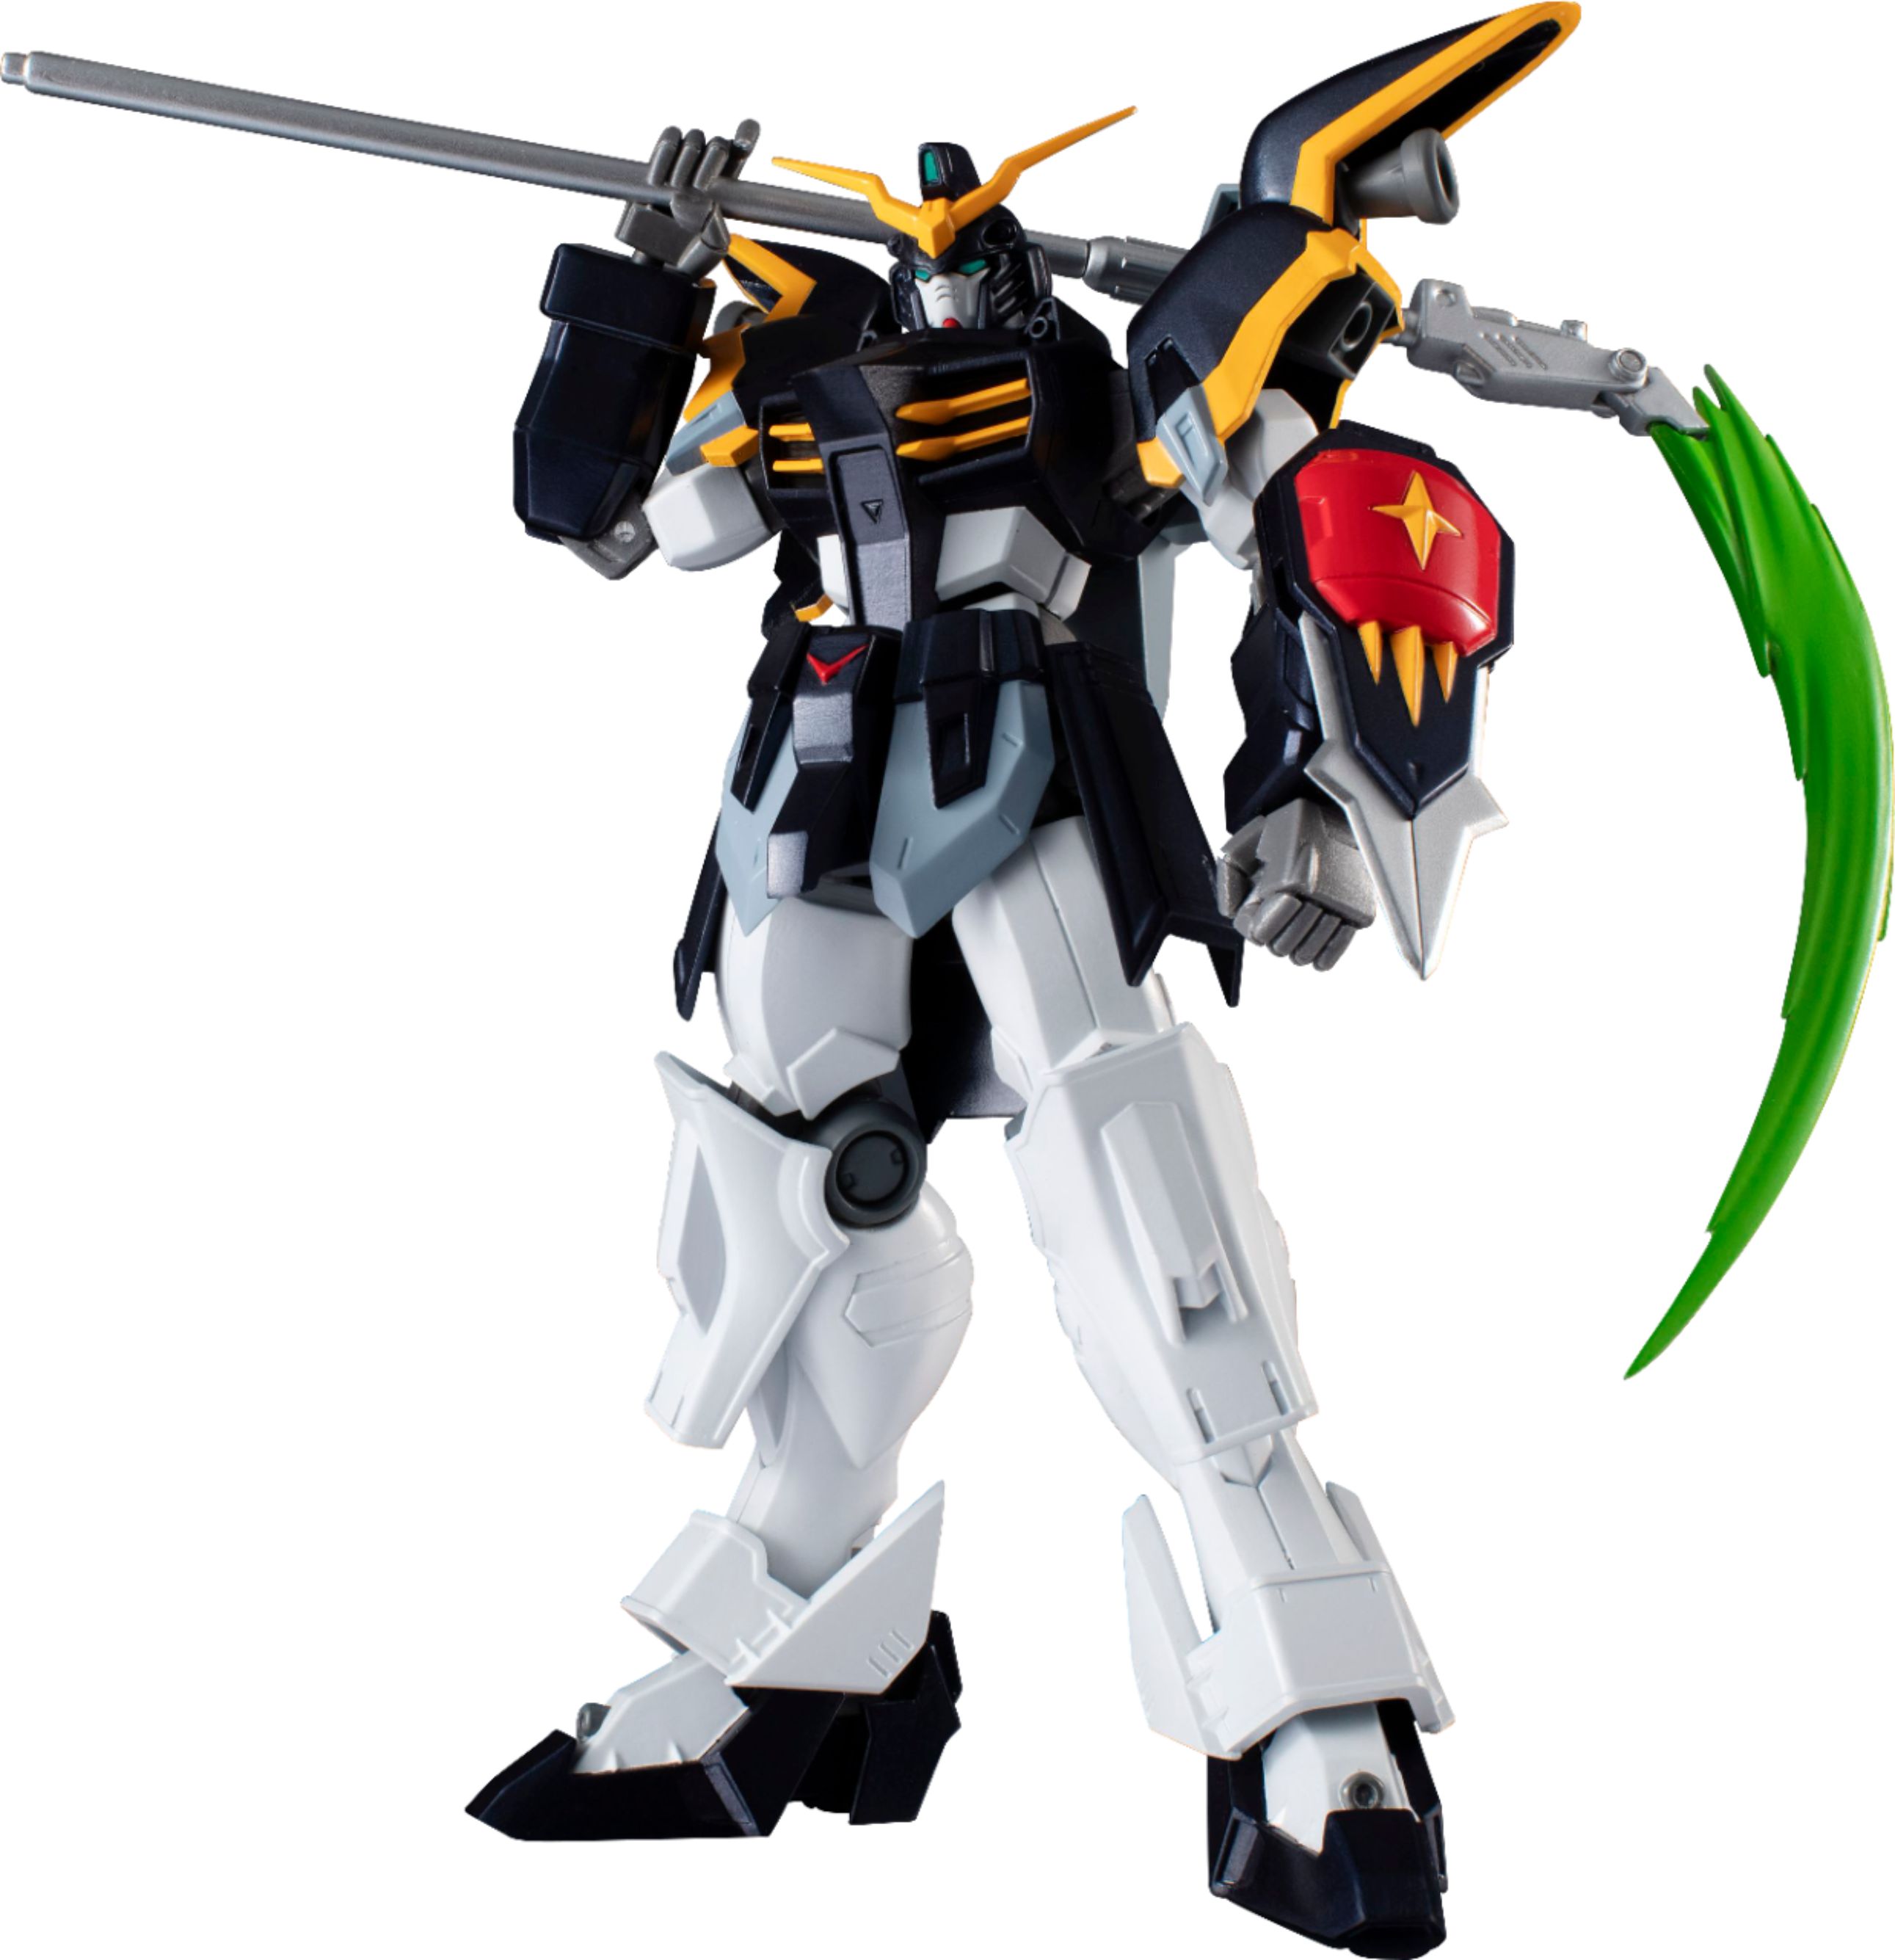 Angle View: Bandai - Gundam Universe Action Figure - Styles May Vary